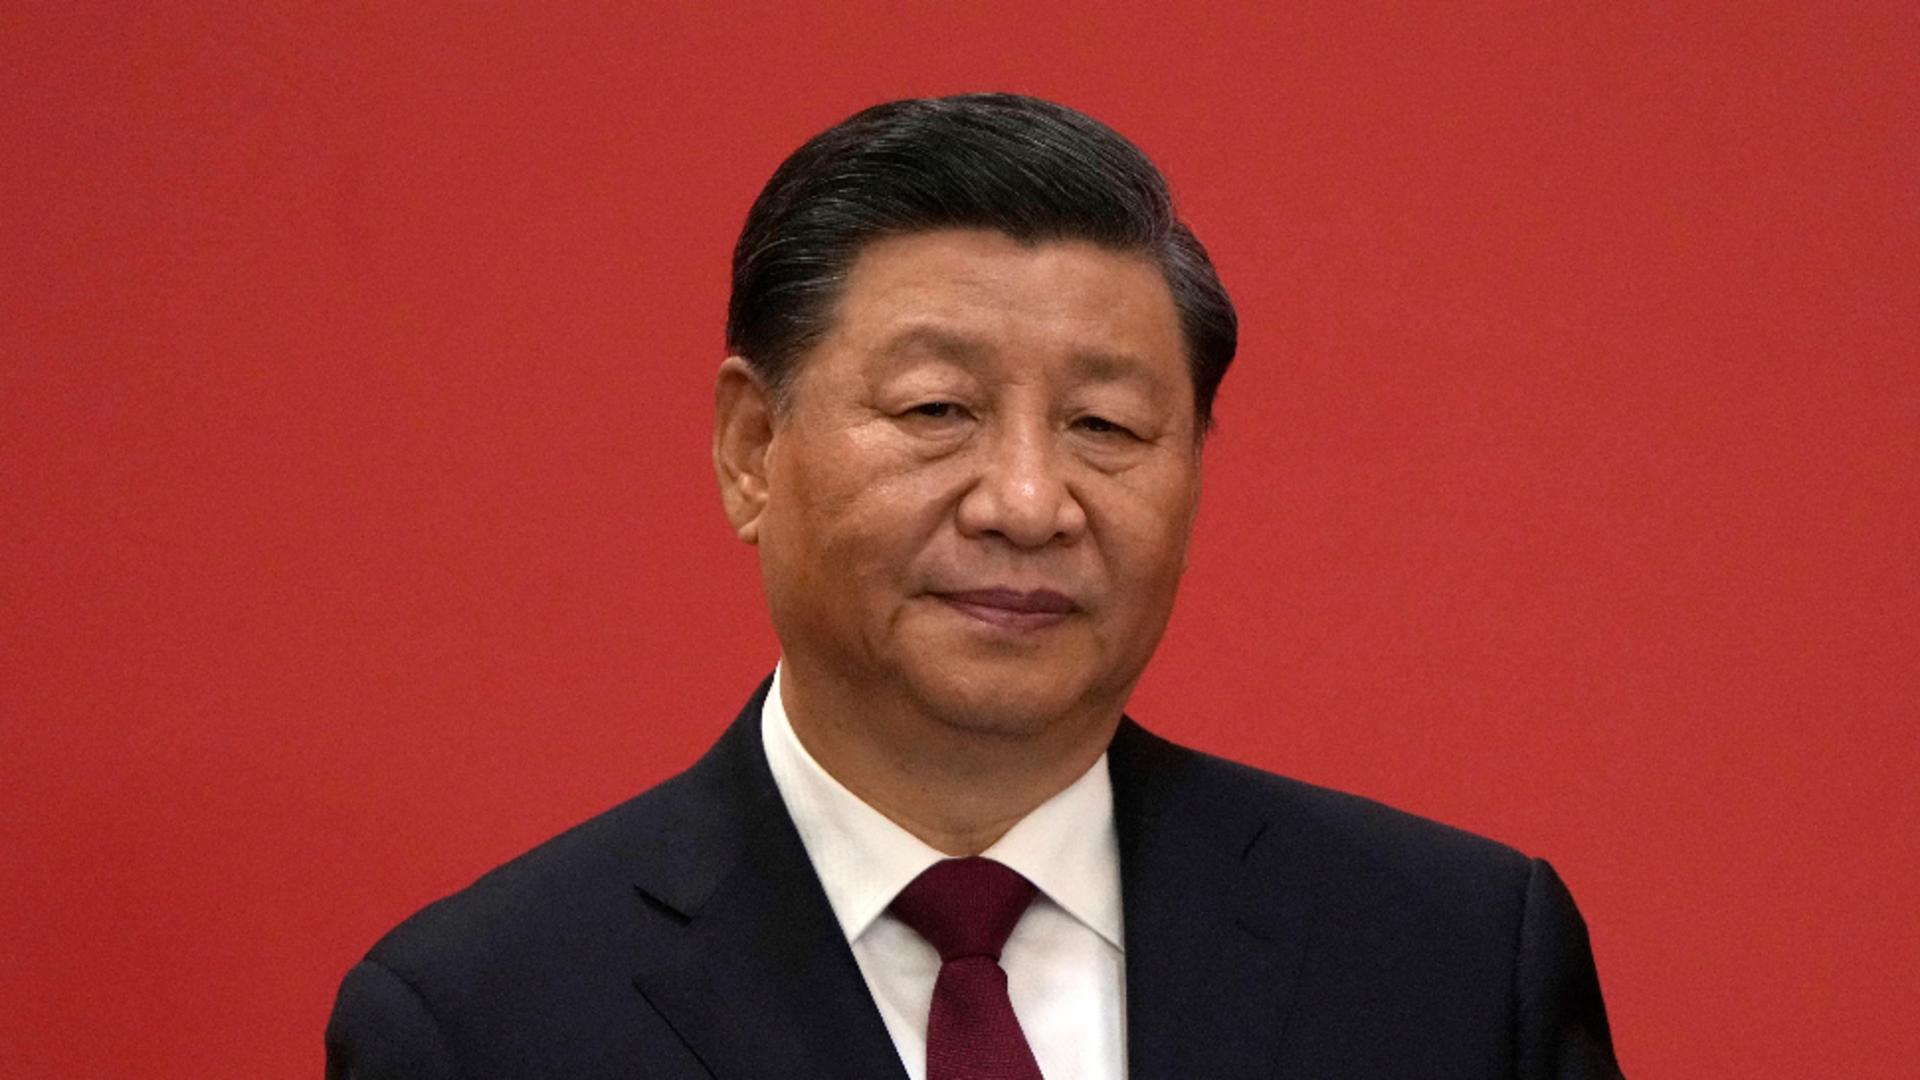 Xi Jinping, vizită în Serbia chiar în ziua în care se împlinesc 25 de ani de la bombardamentul NATO asupra unei ambasade chineze